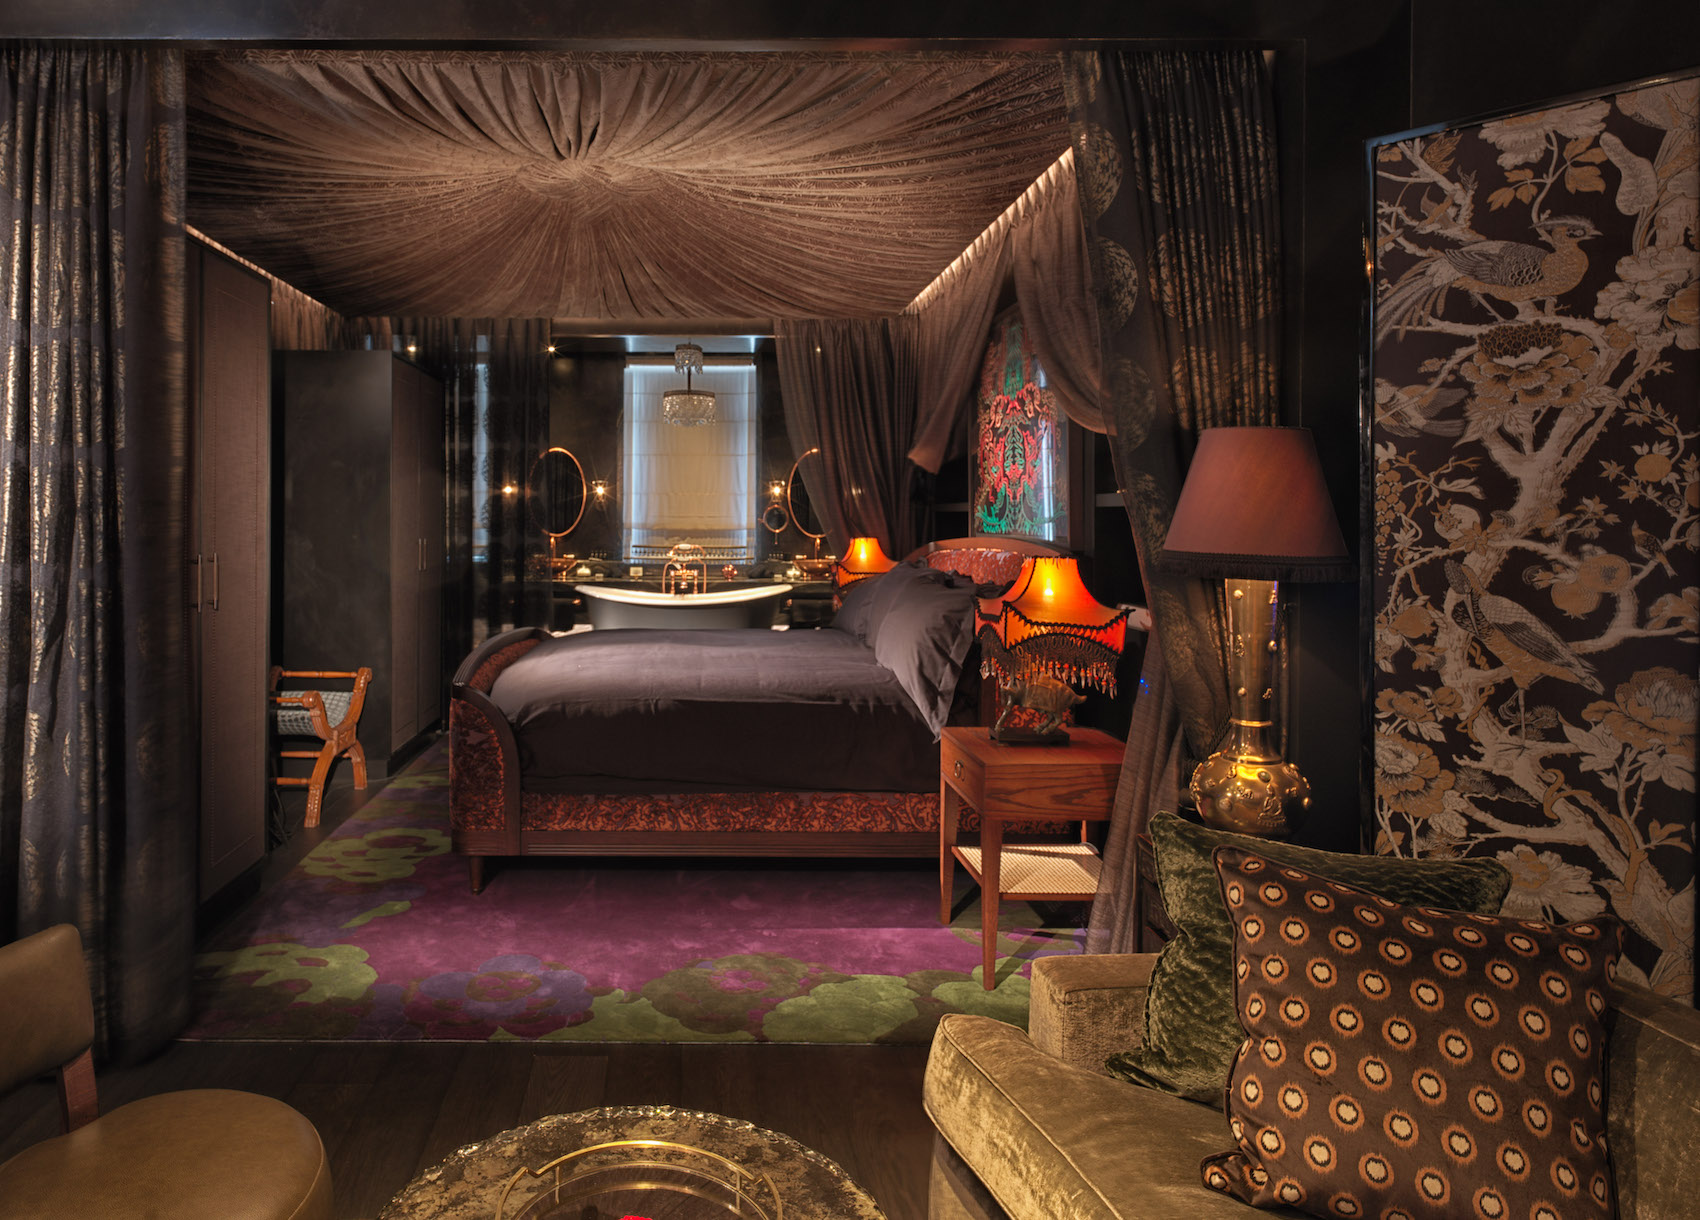 Mandrake Suite at the Mandrake Hotel interior designed by Tala Fustok – Effect Magazine